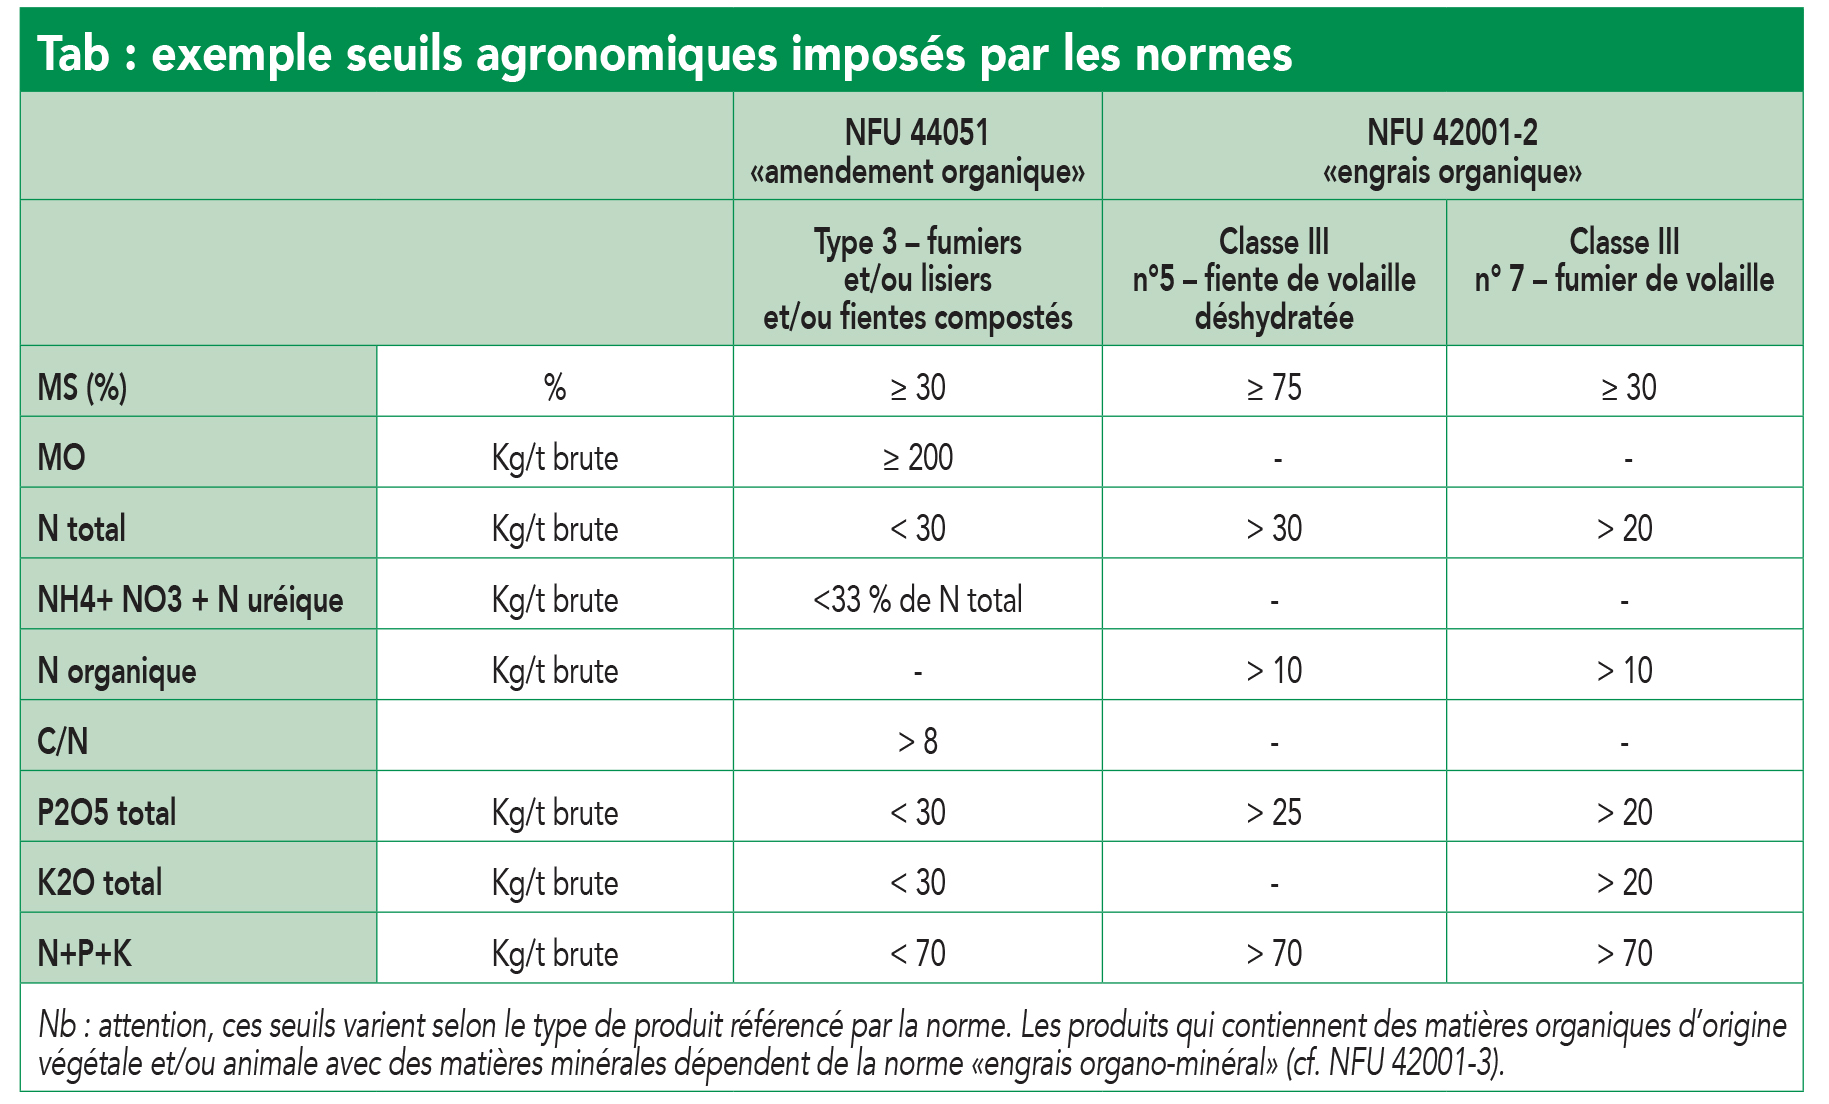 le marché des engrais et fertilisants en France